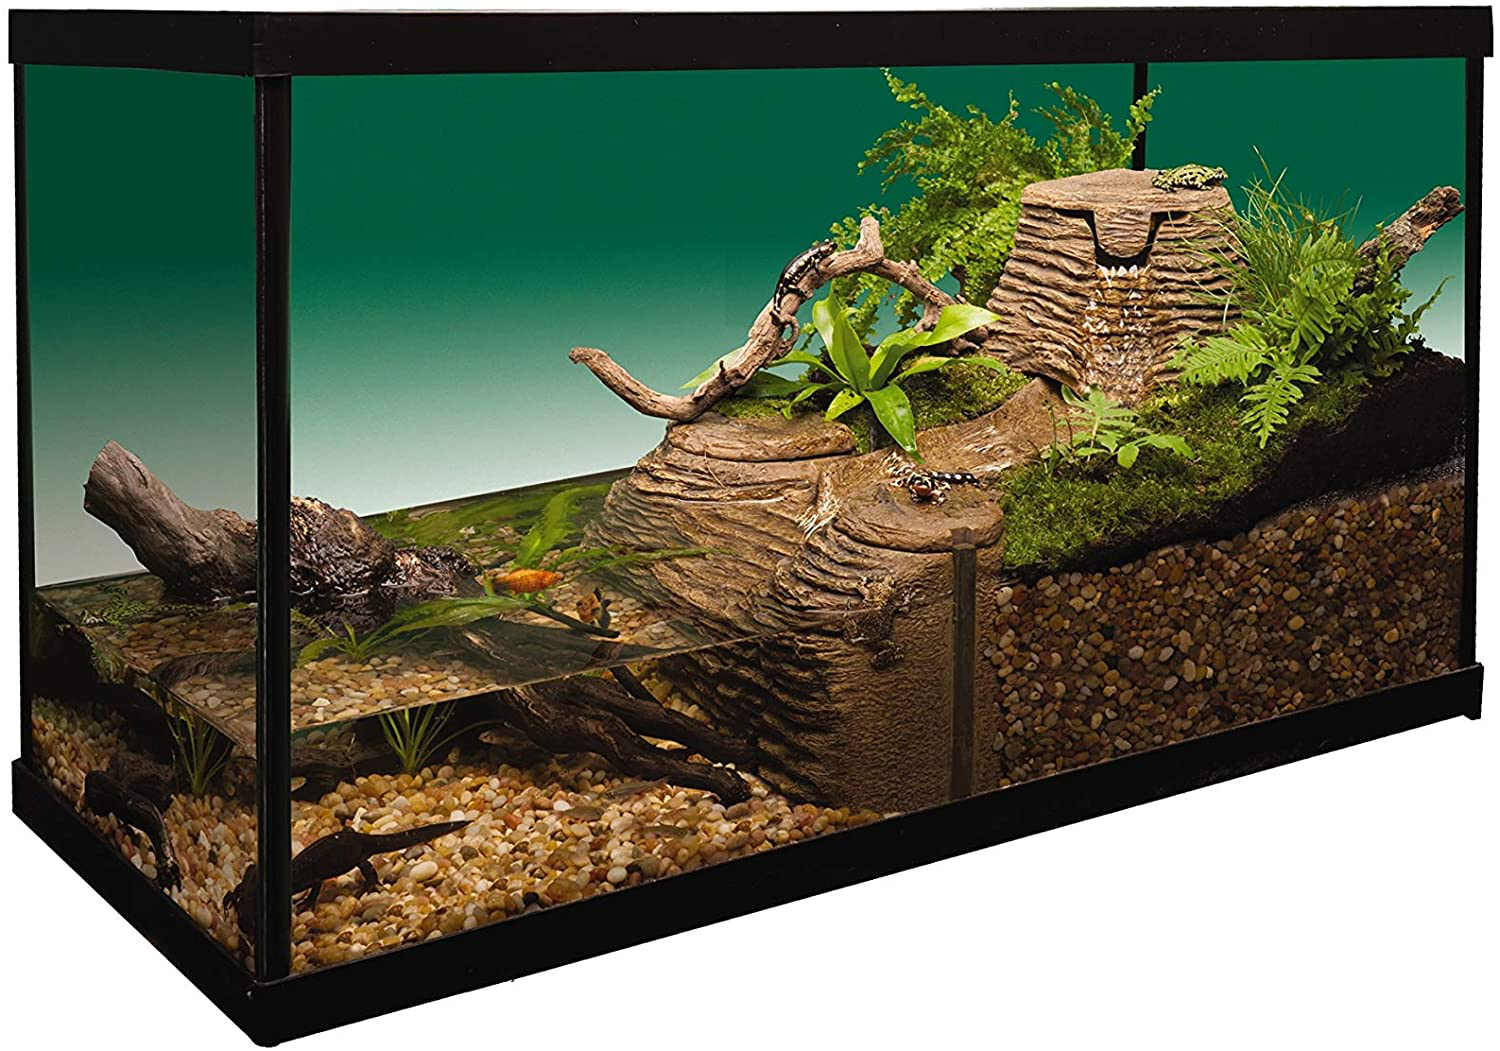 Tetrafauna Viqaquarium, All-In-One Terrarium and Aquarium, Ideal for Aquatic Reptiles and Amphibians